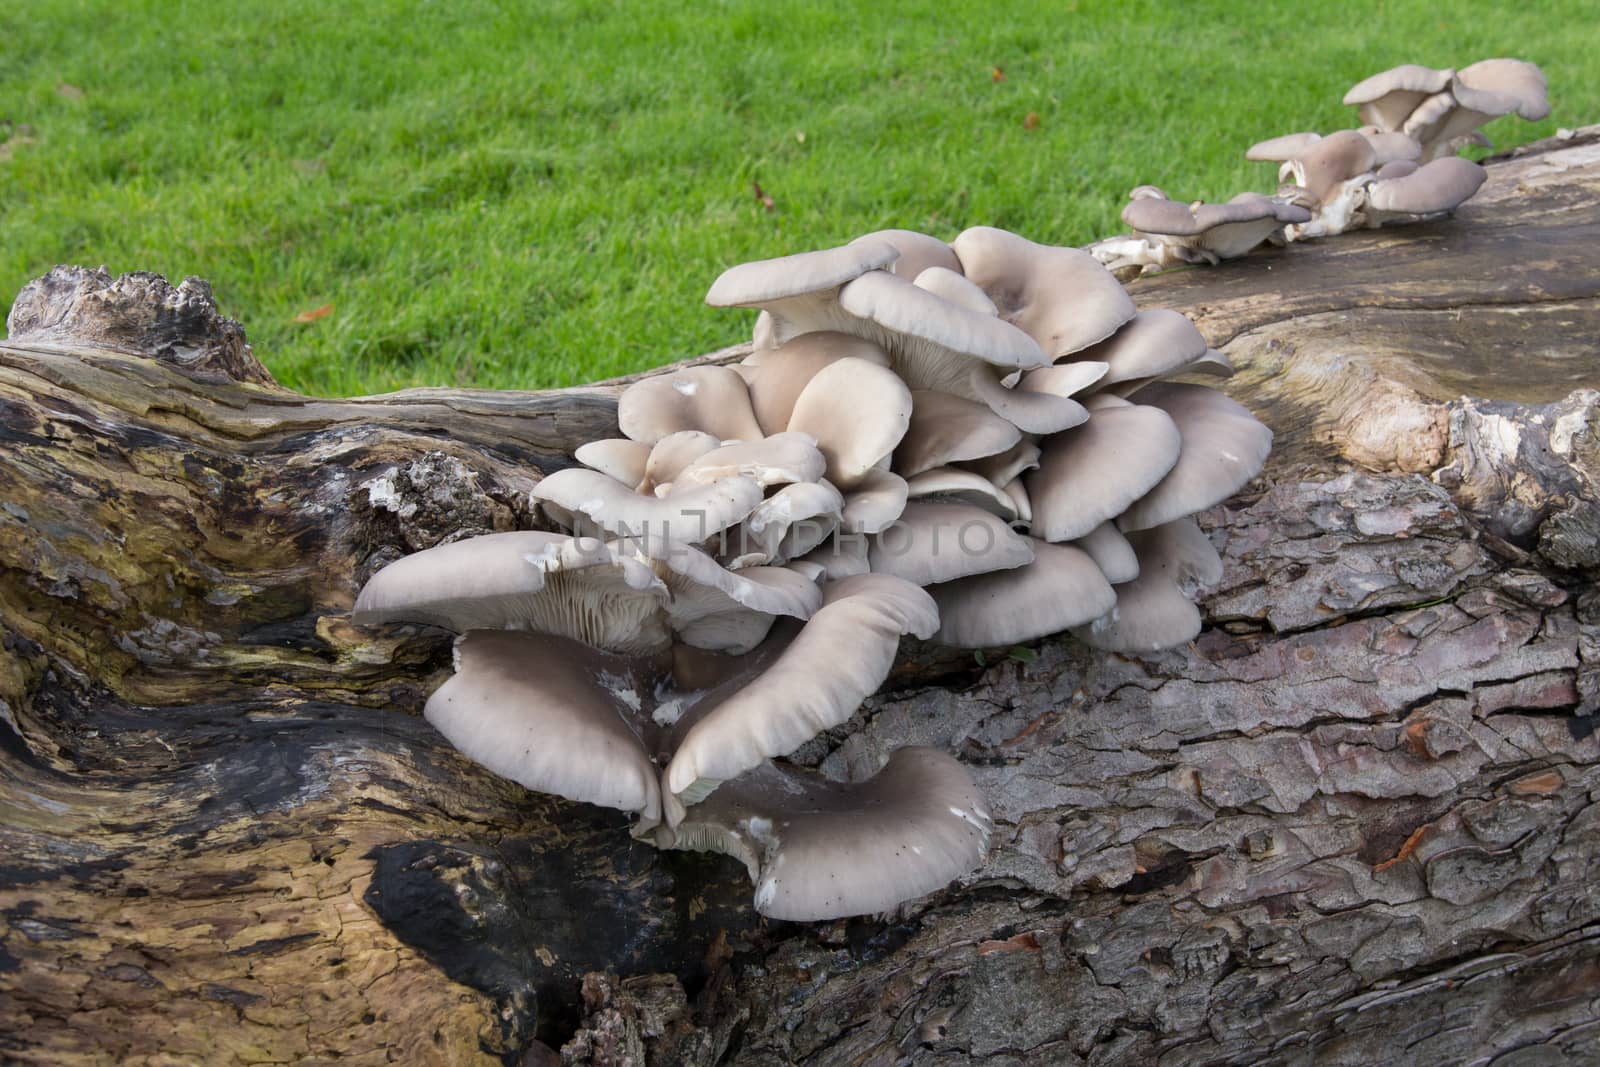 Wild mushrooms by magicbones